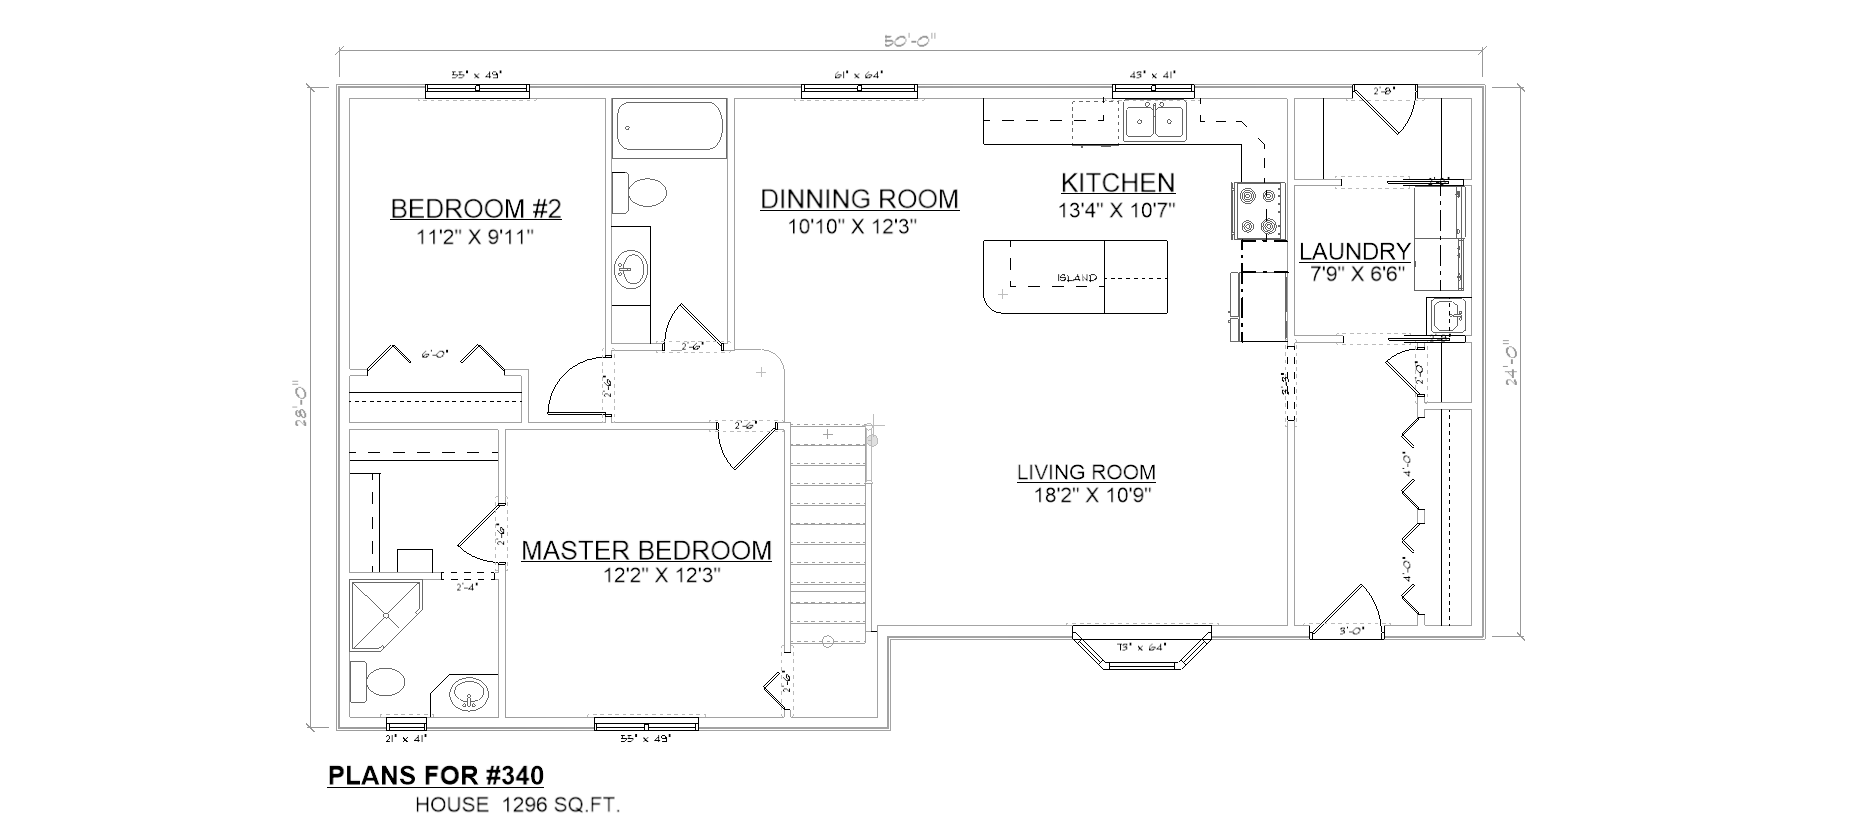 Penner Homes Floor Plan Id: 340